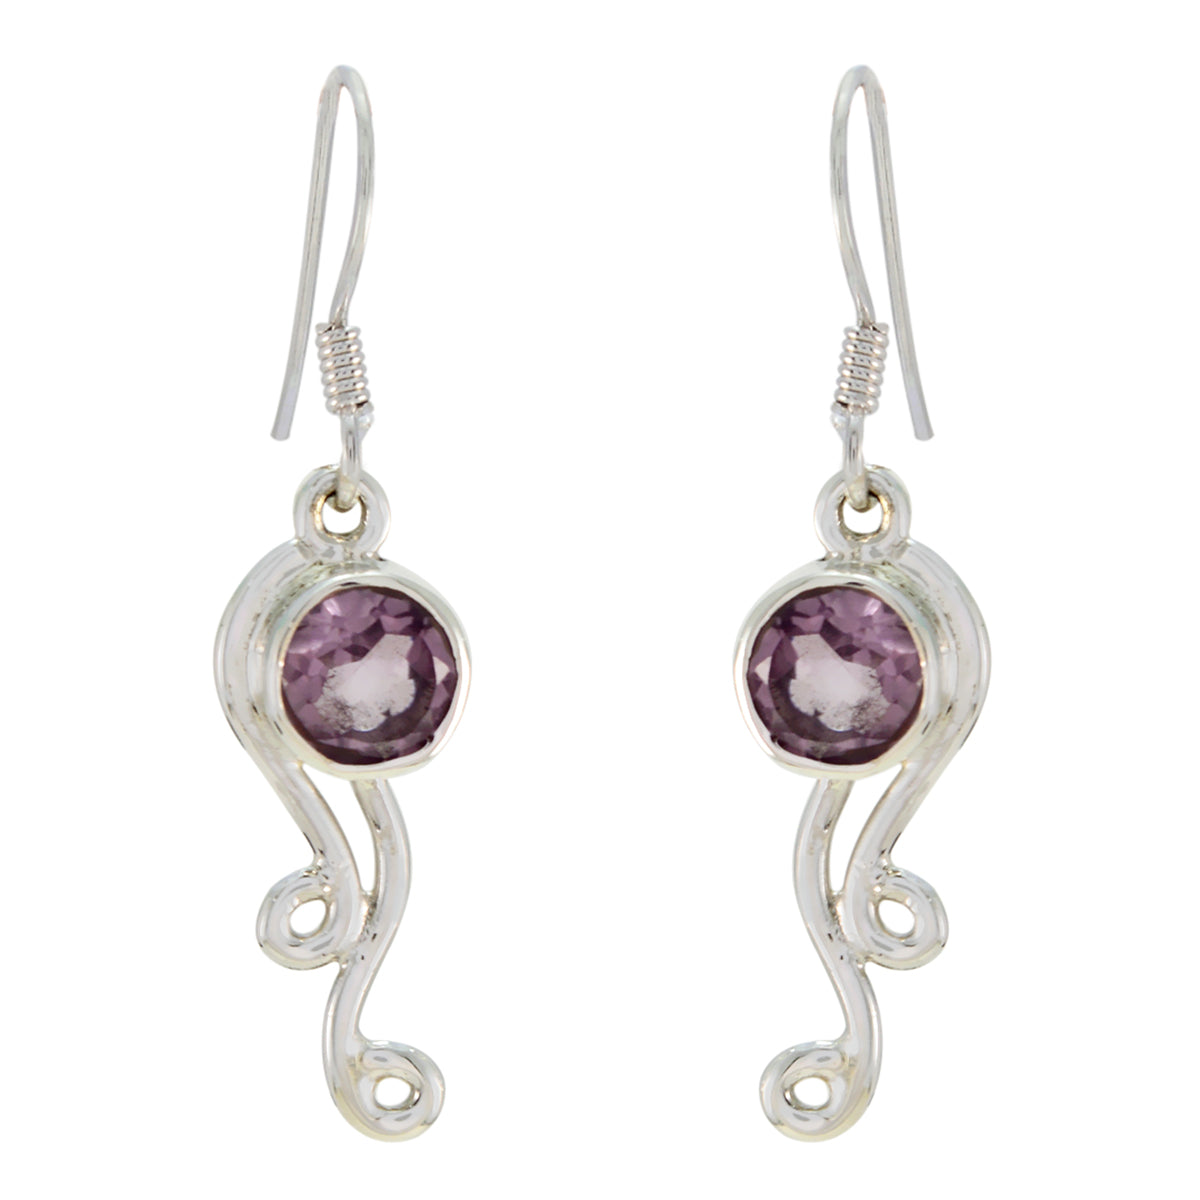 Riyo Real Gemstones round Faceted Purple Amethyst Silver Earrings handmade gift